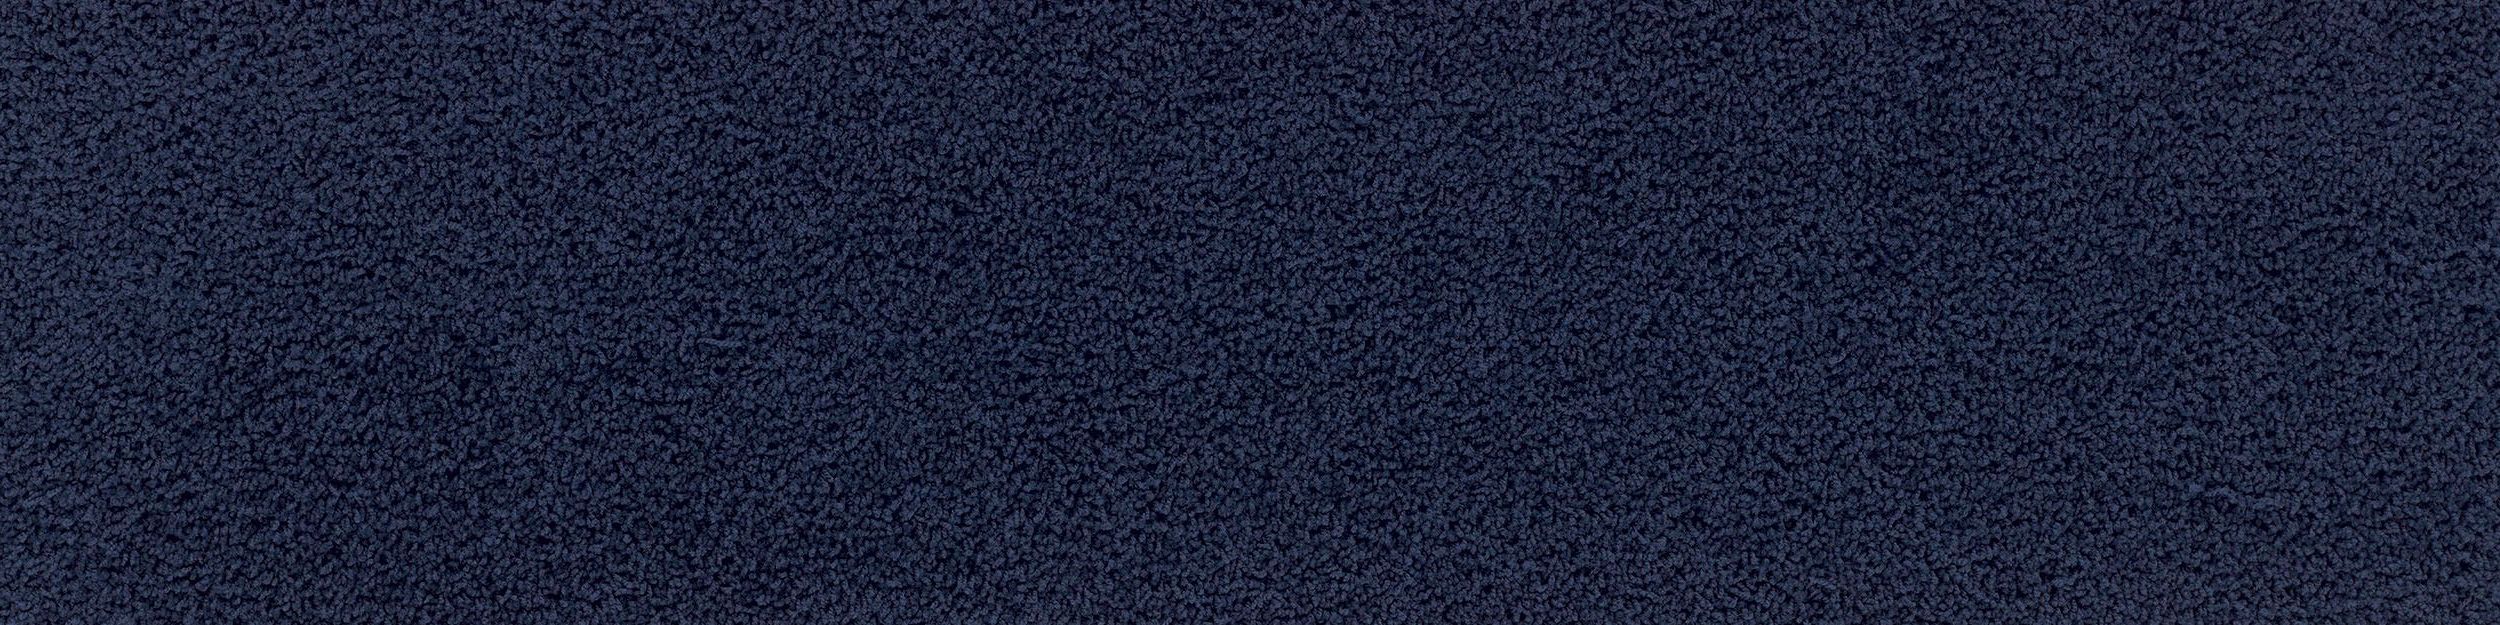 HN830 Carpet Tile In Cobalt imagen número 2